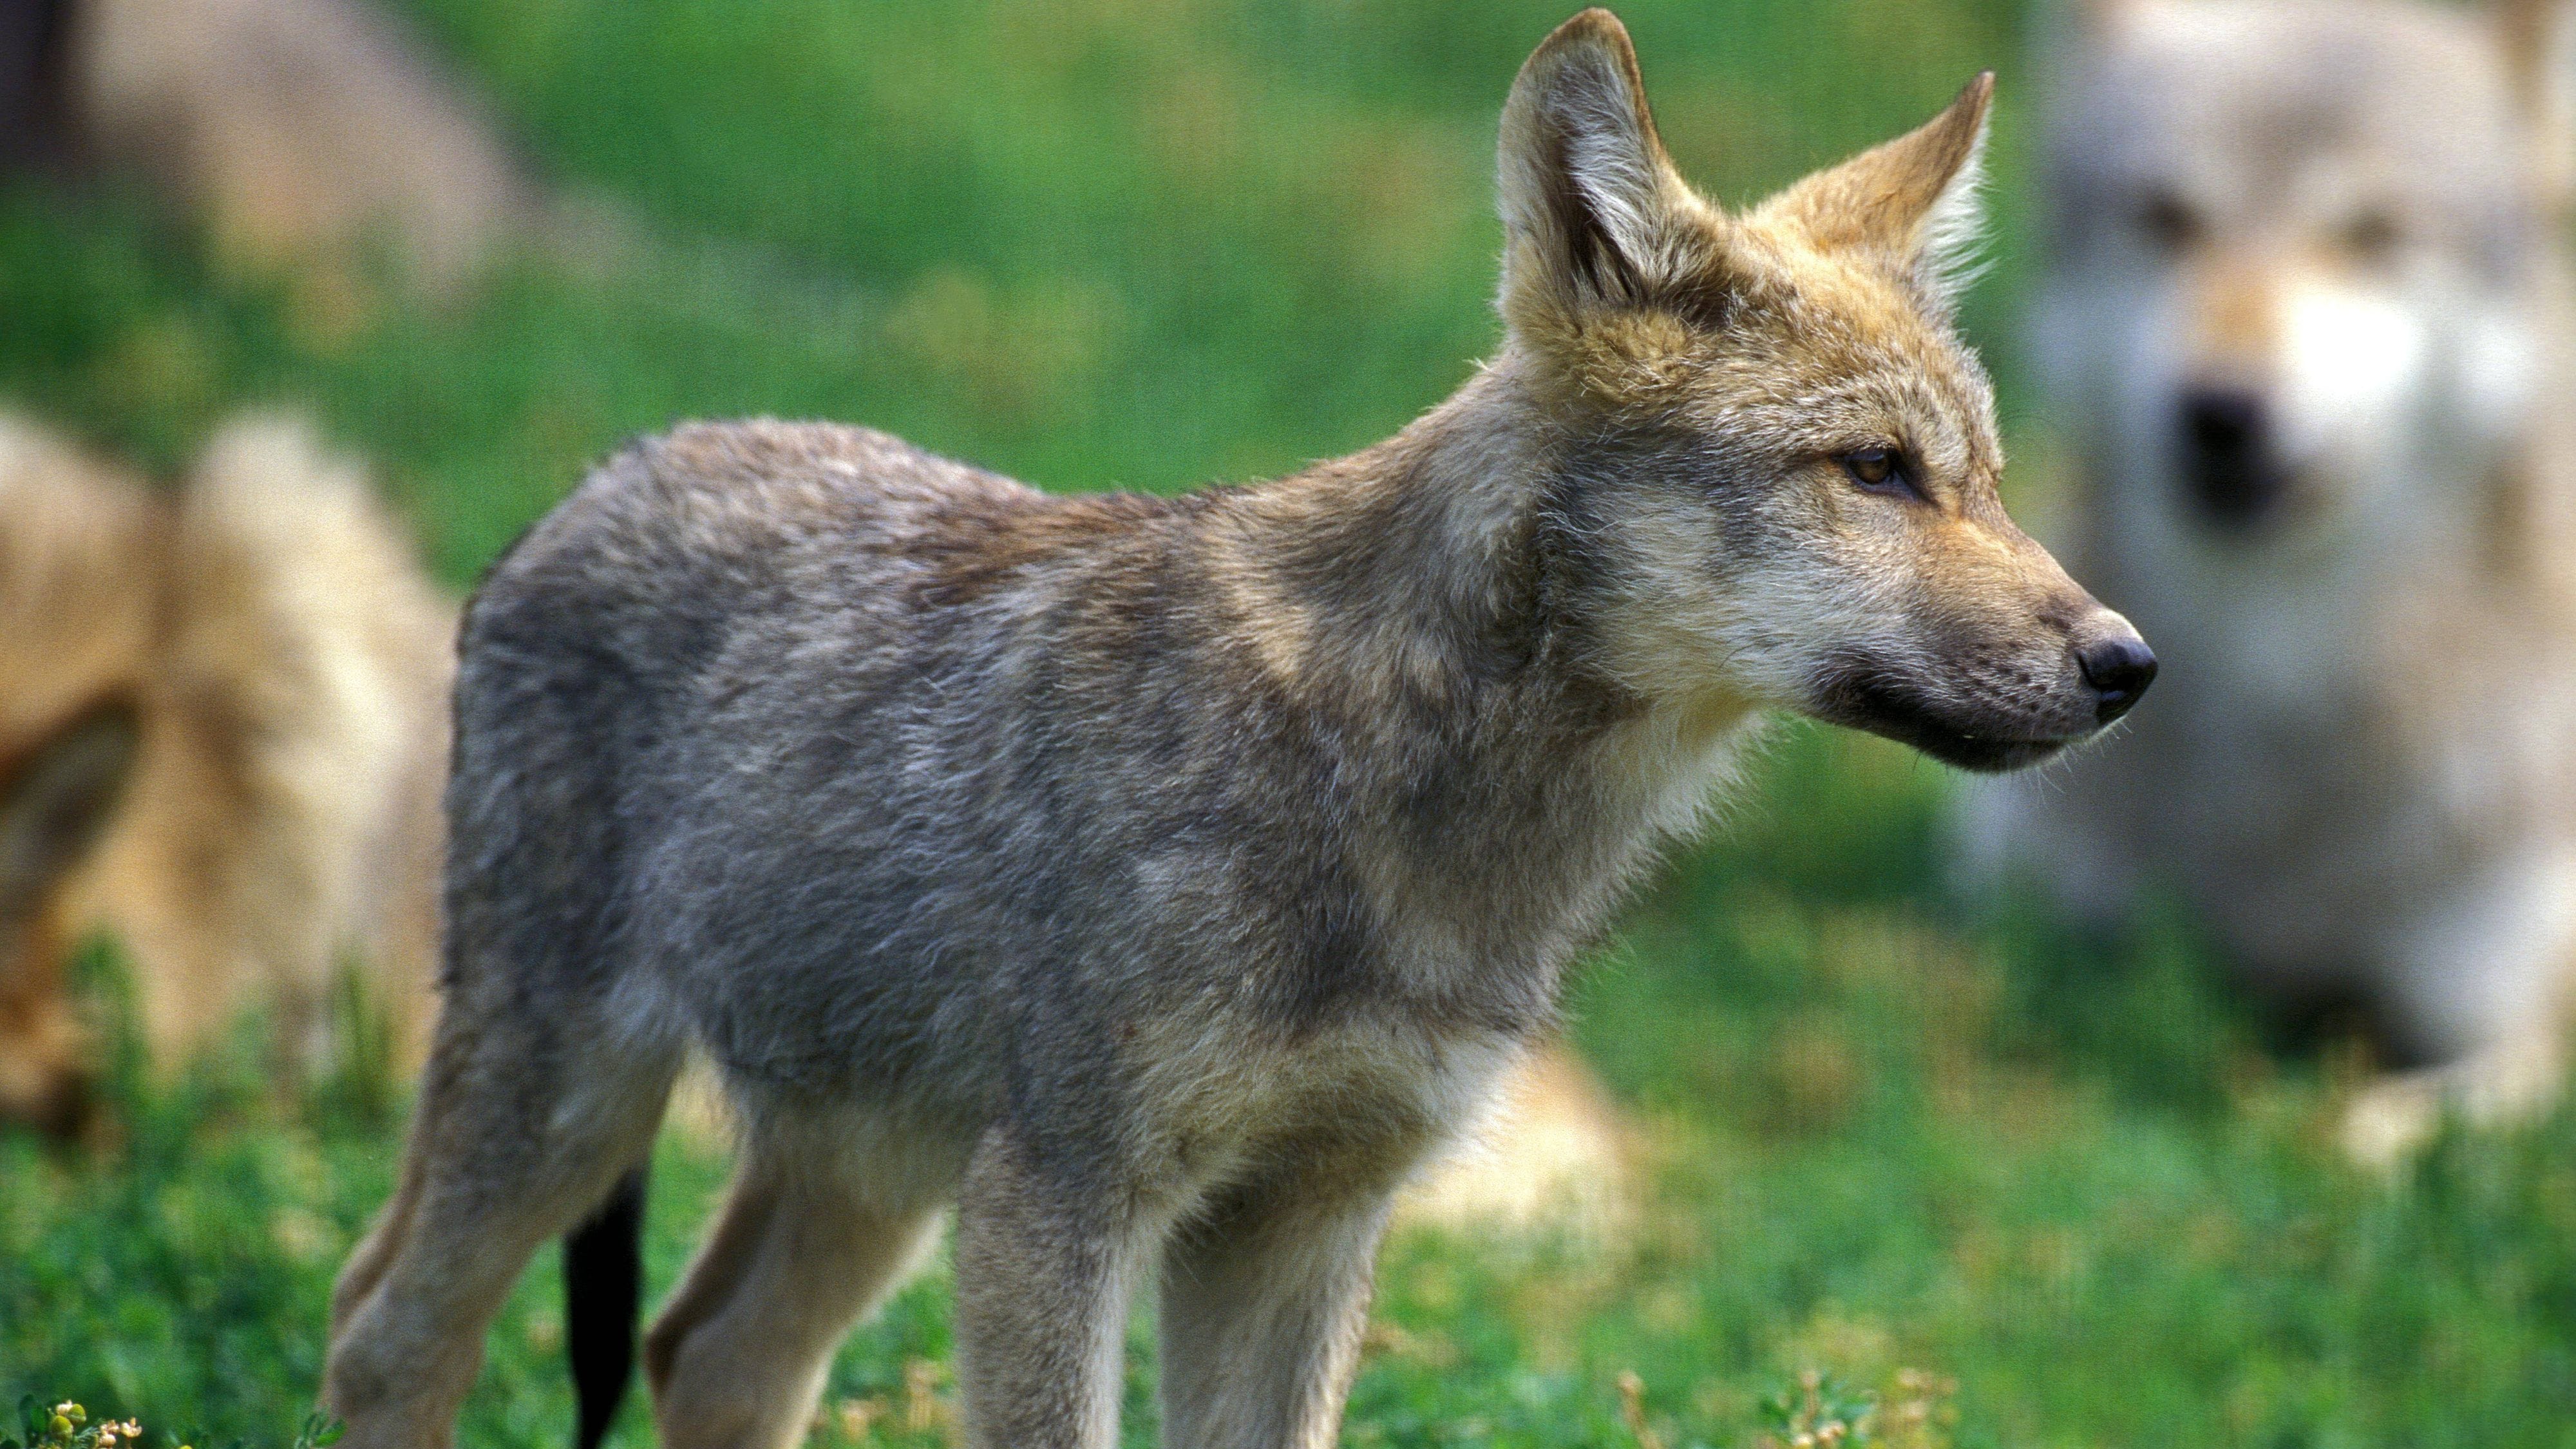 NRW: Zwei junge Wölfe bei Köln durch Autos getötet